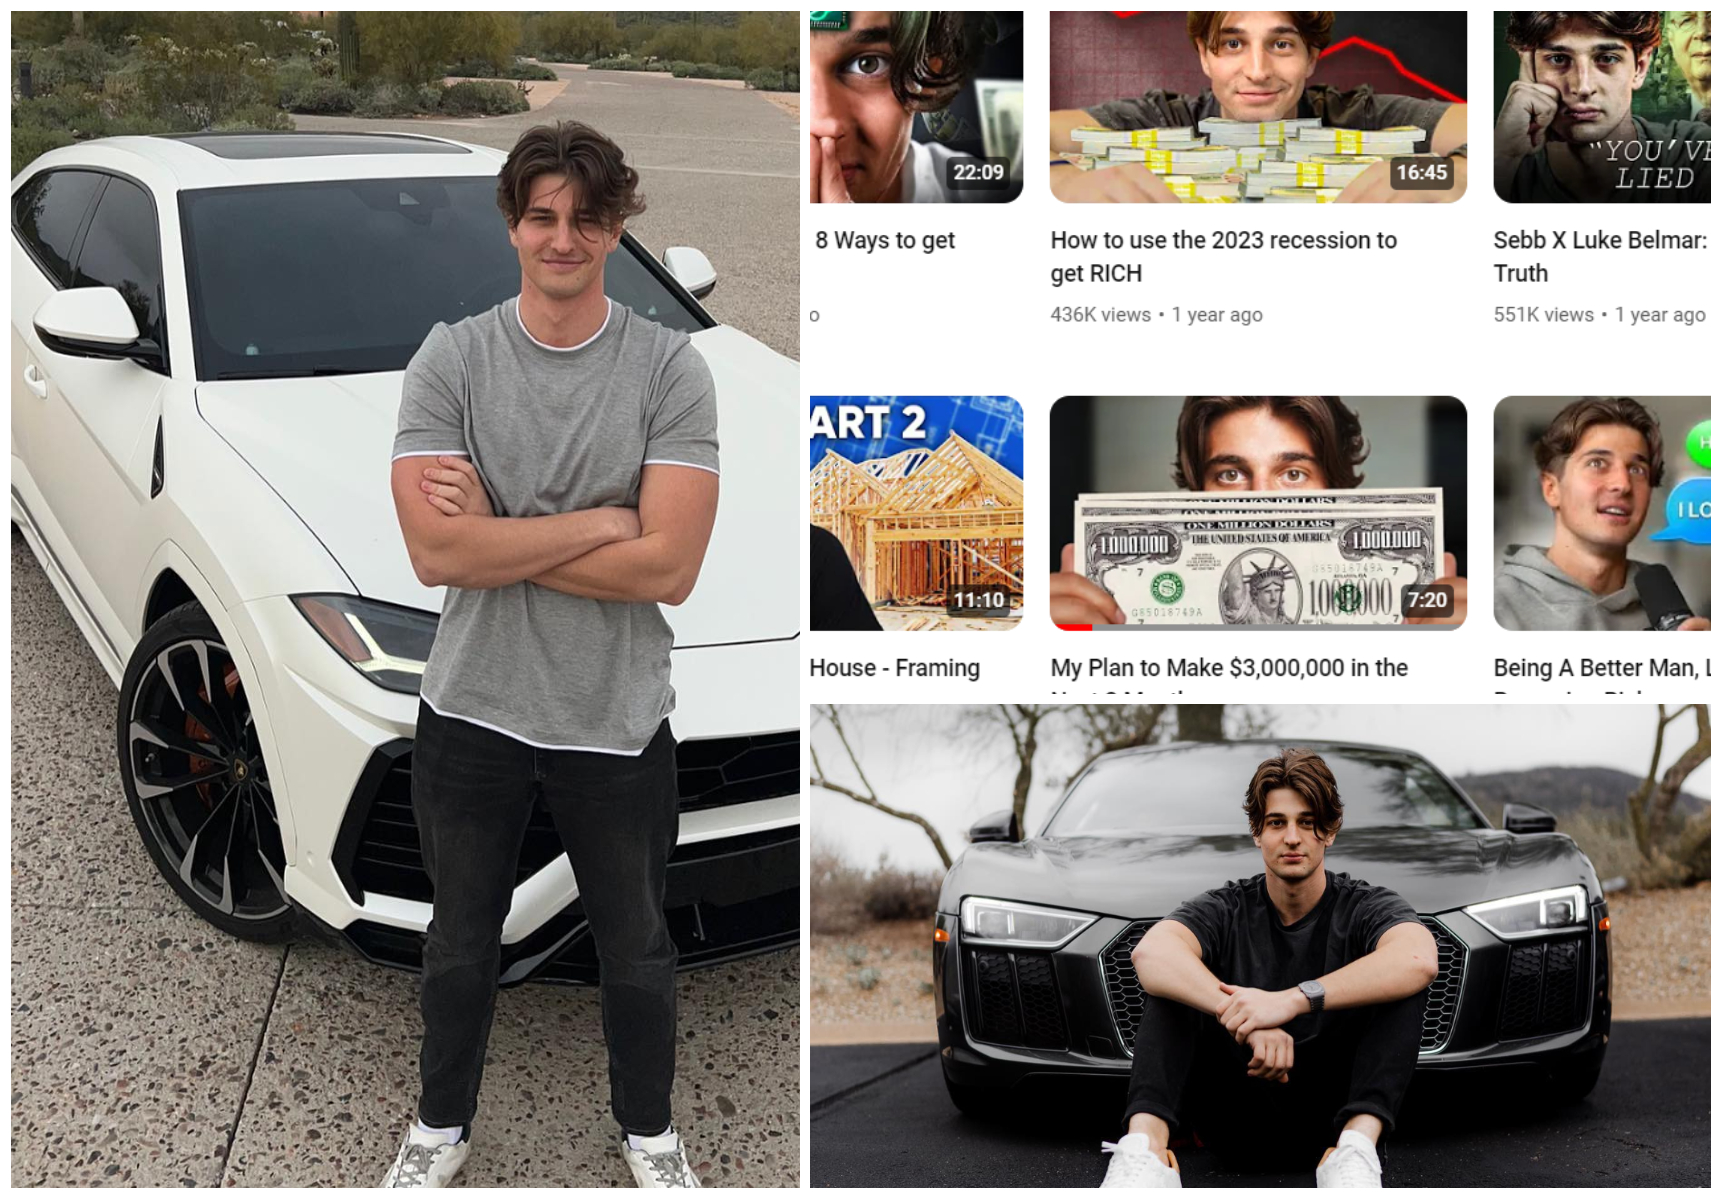 Cine este Sebastian Gheorghiu, milionarul american devenit popular cu rețeta îmbogățirii sale: ”Am trecut de la 1000 $ la 8 milioane $”